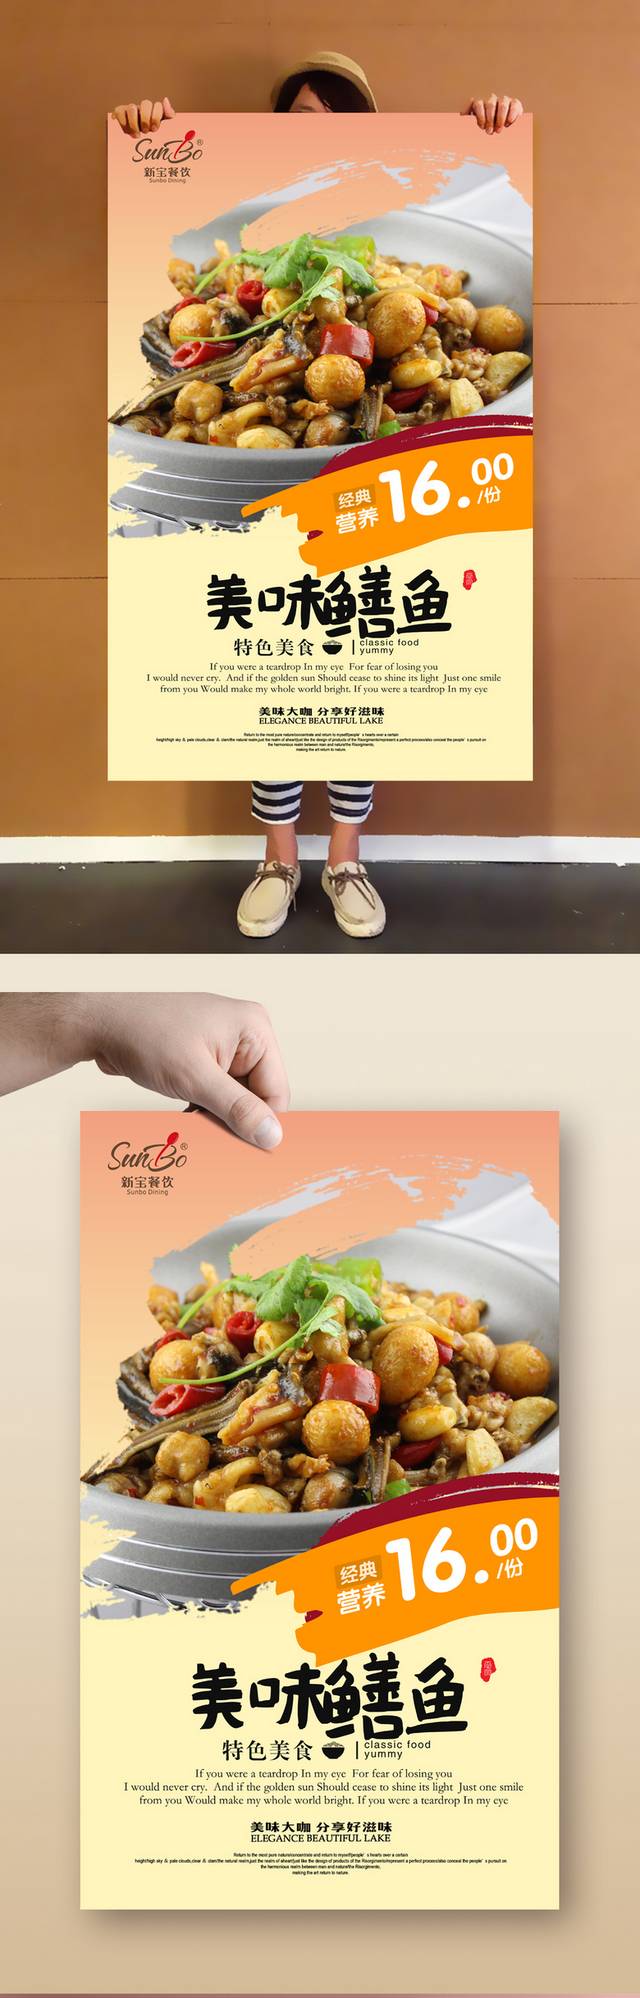 鳝鱼美食宣传海报设计